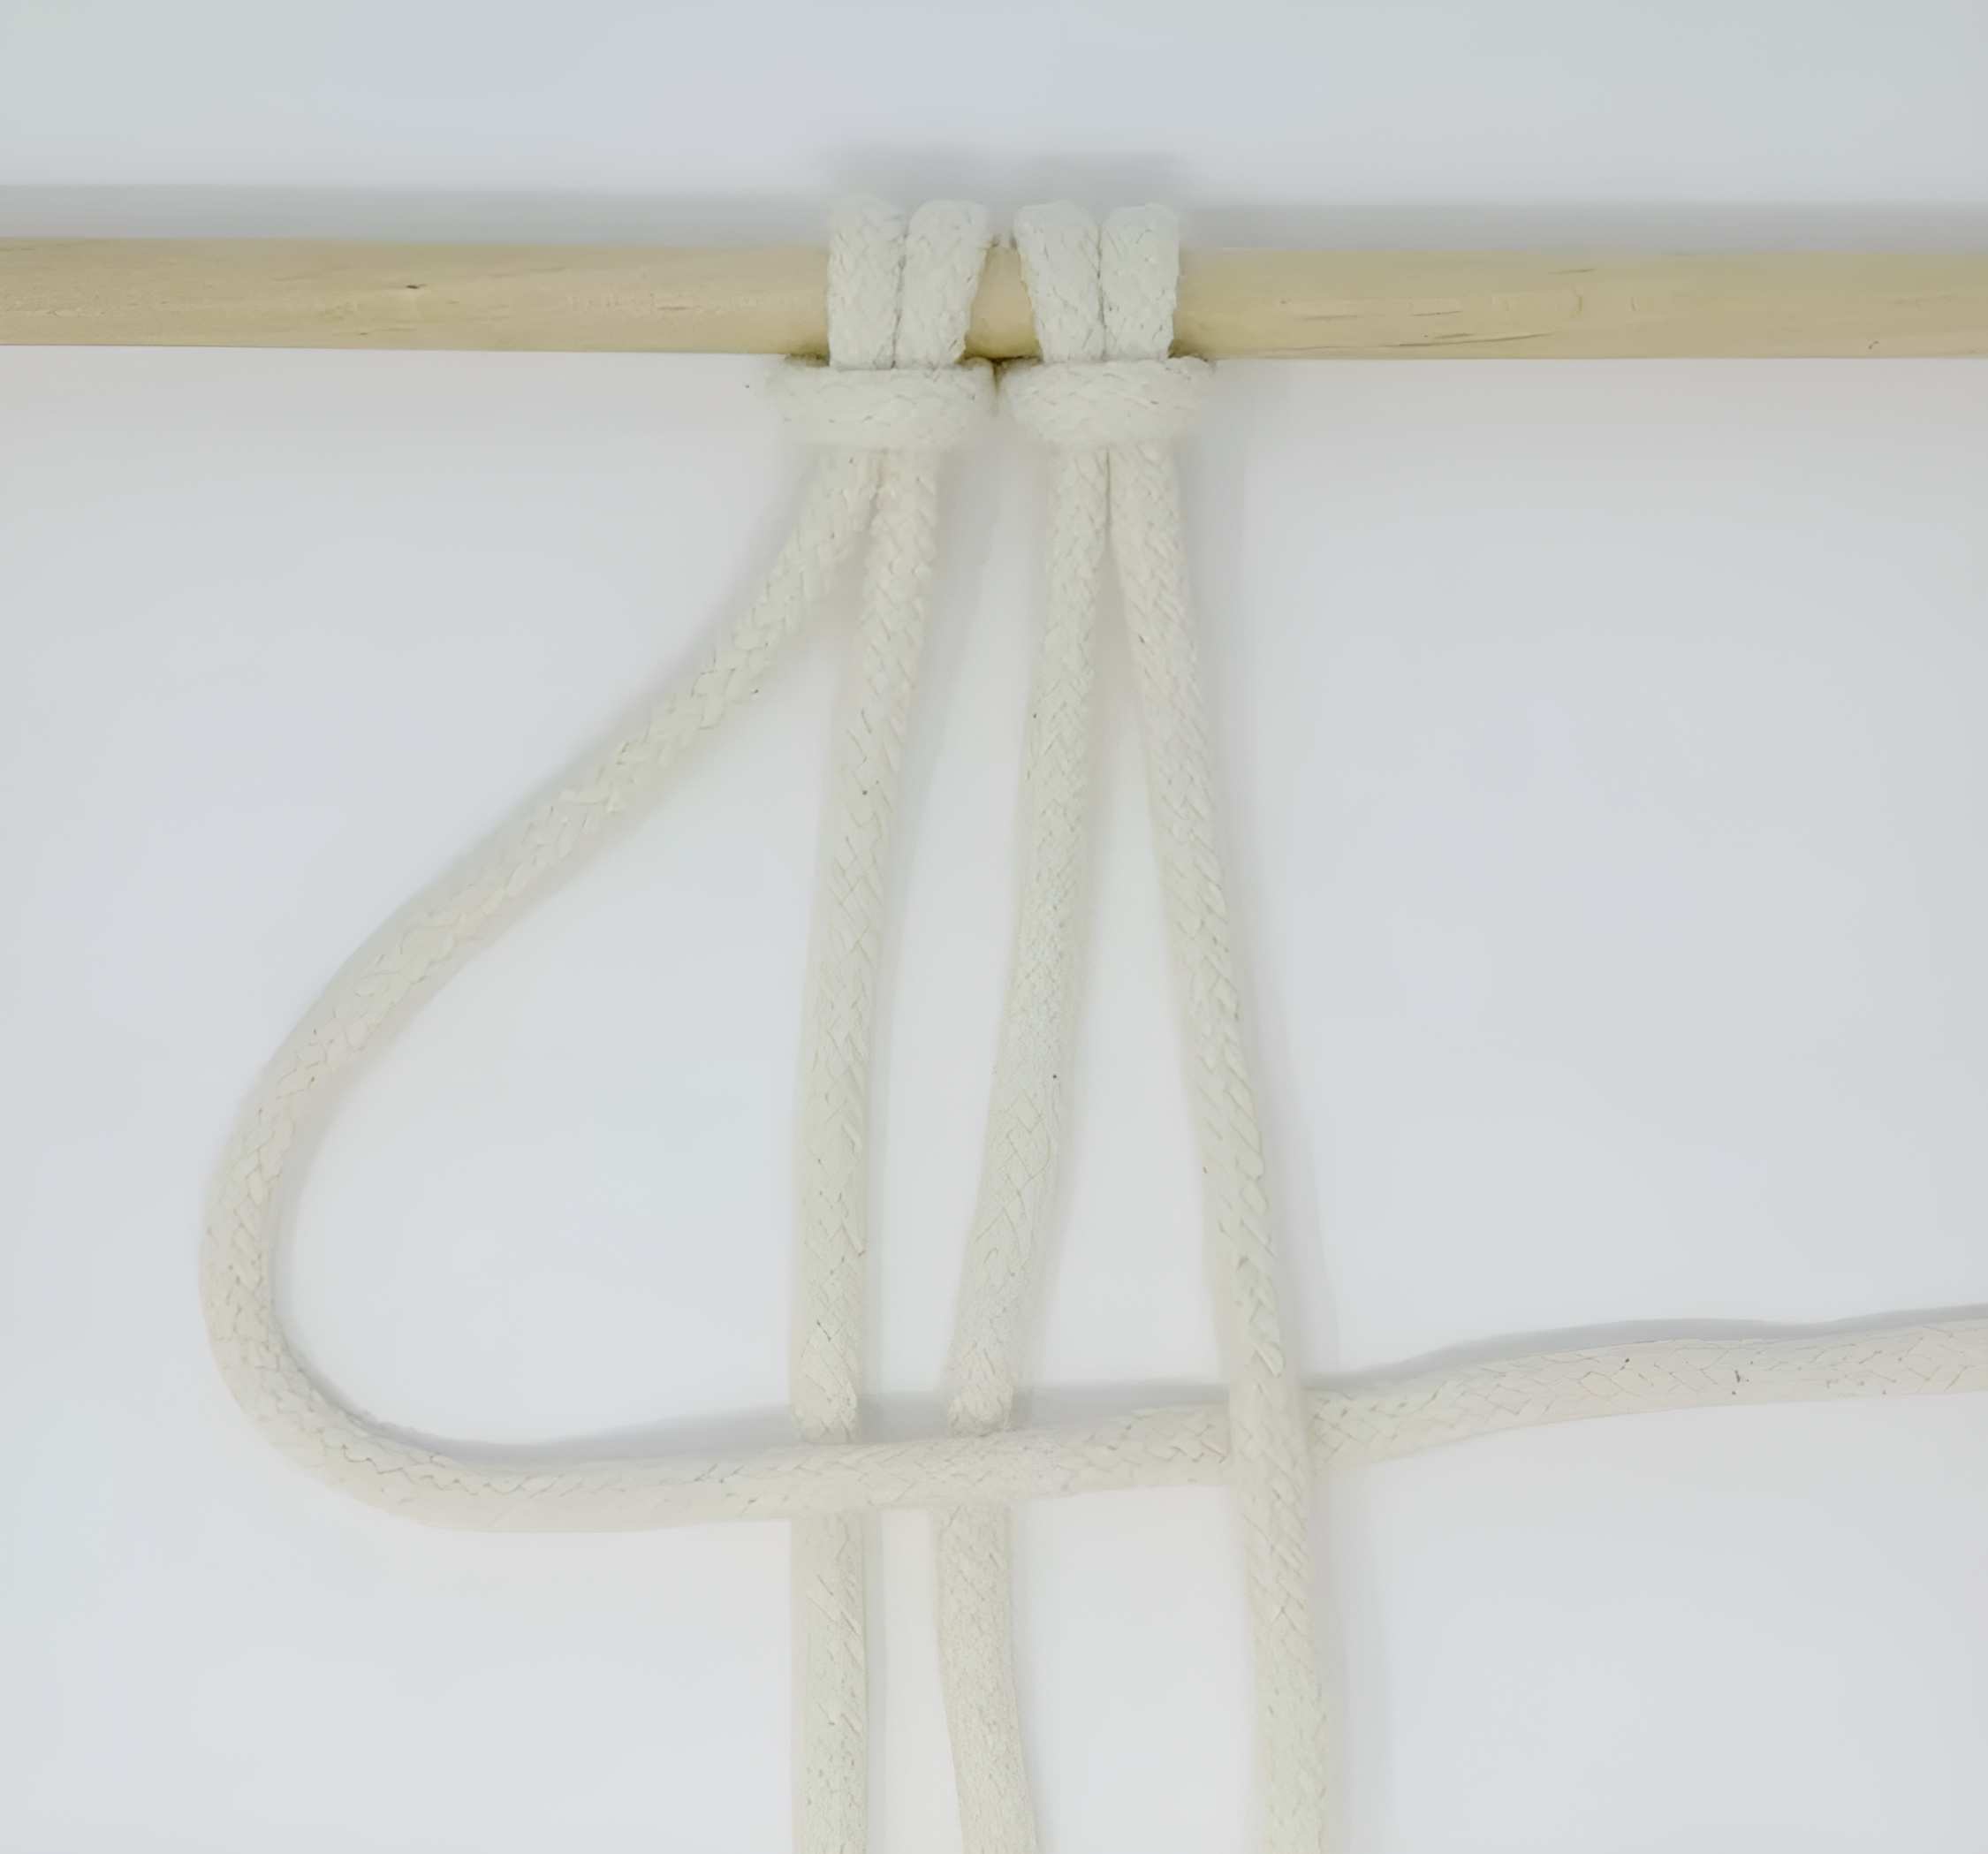 Lấy dây đầu tiên (dây làm việc 1) và di chuyển nó sang bên phải trên dây phụ ở giữa (dây phụ 2 và 3) và dưới dây cuối cùng (dây làm việc 4).